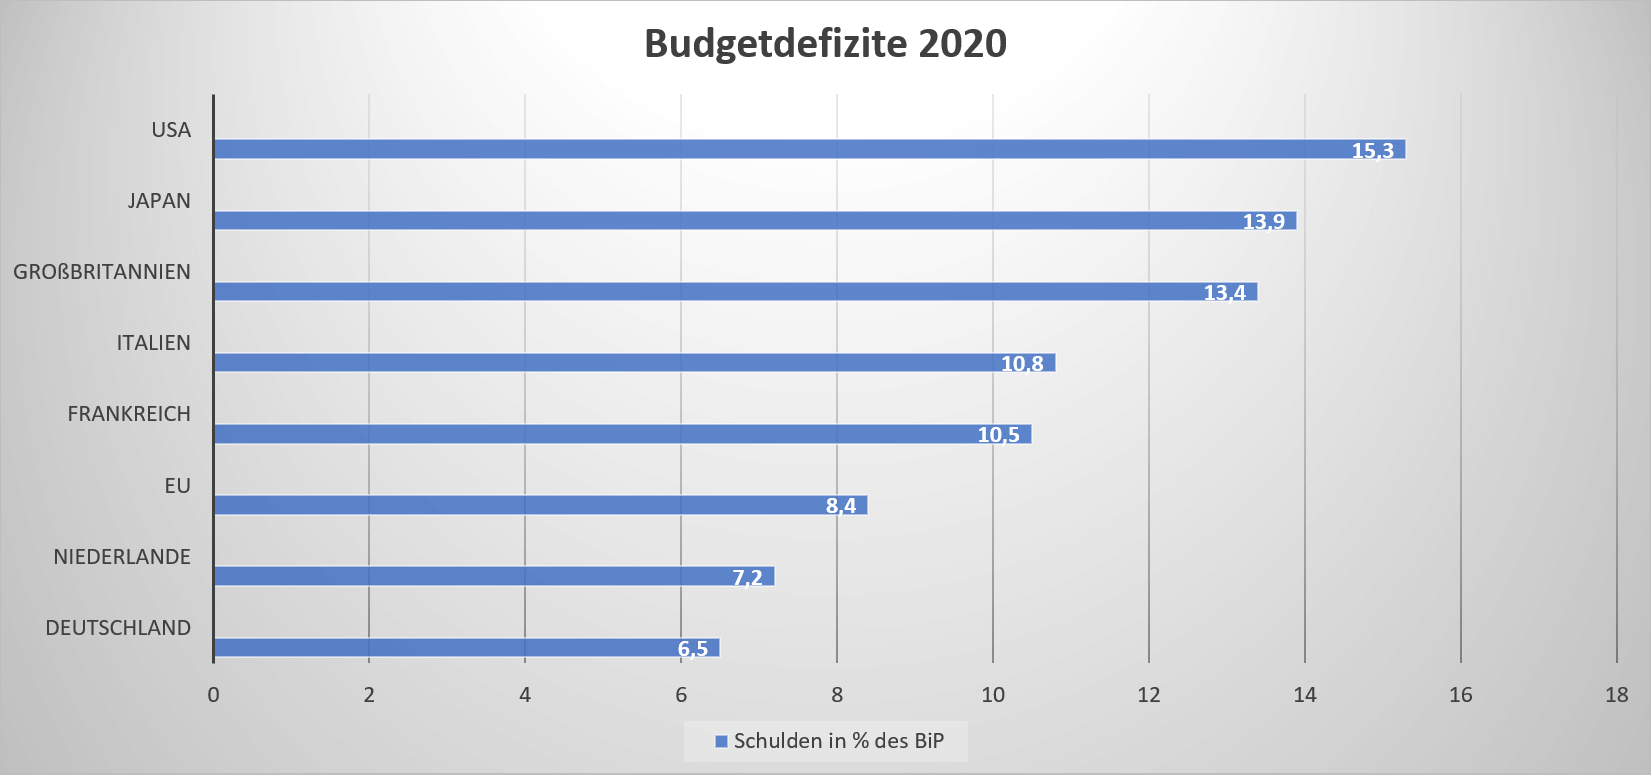 Budgetdefizite